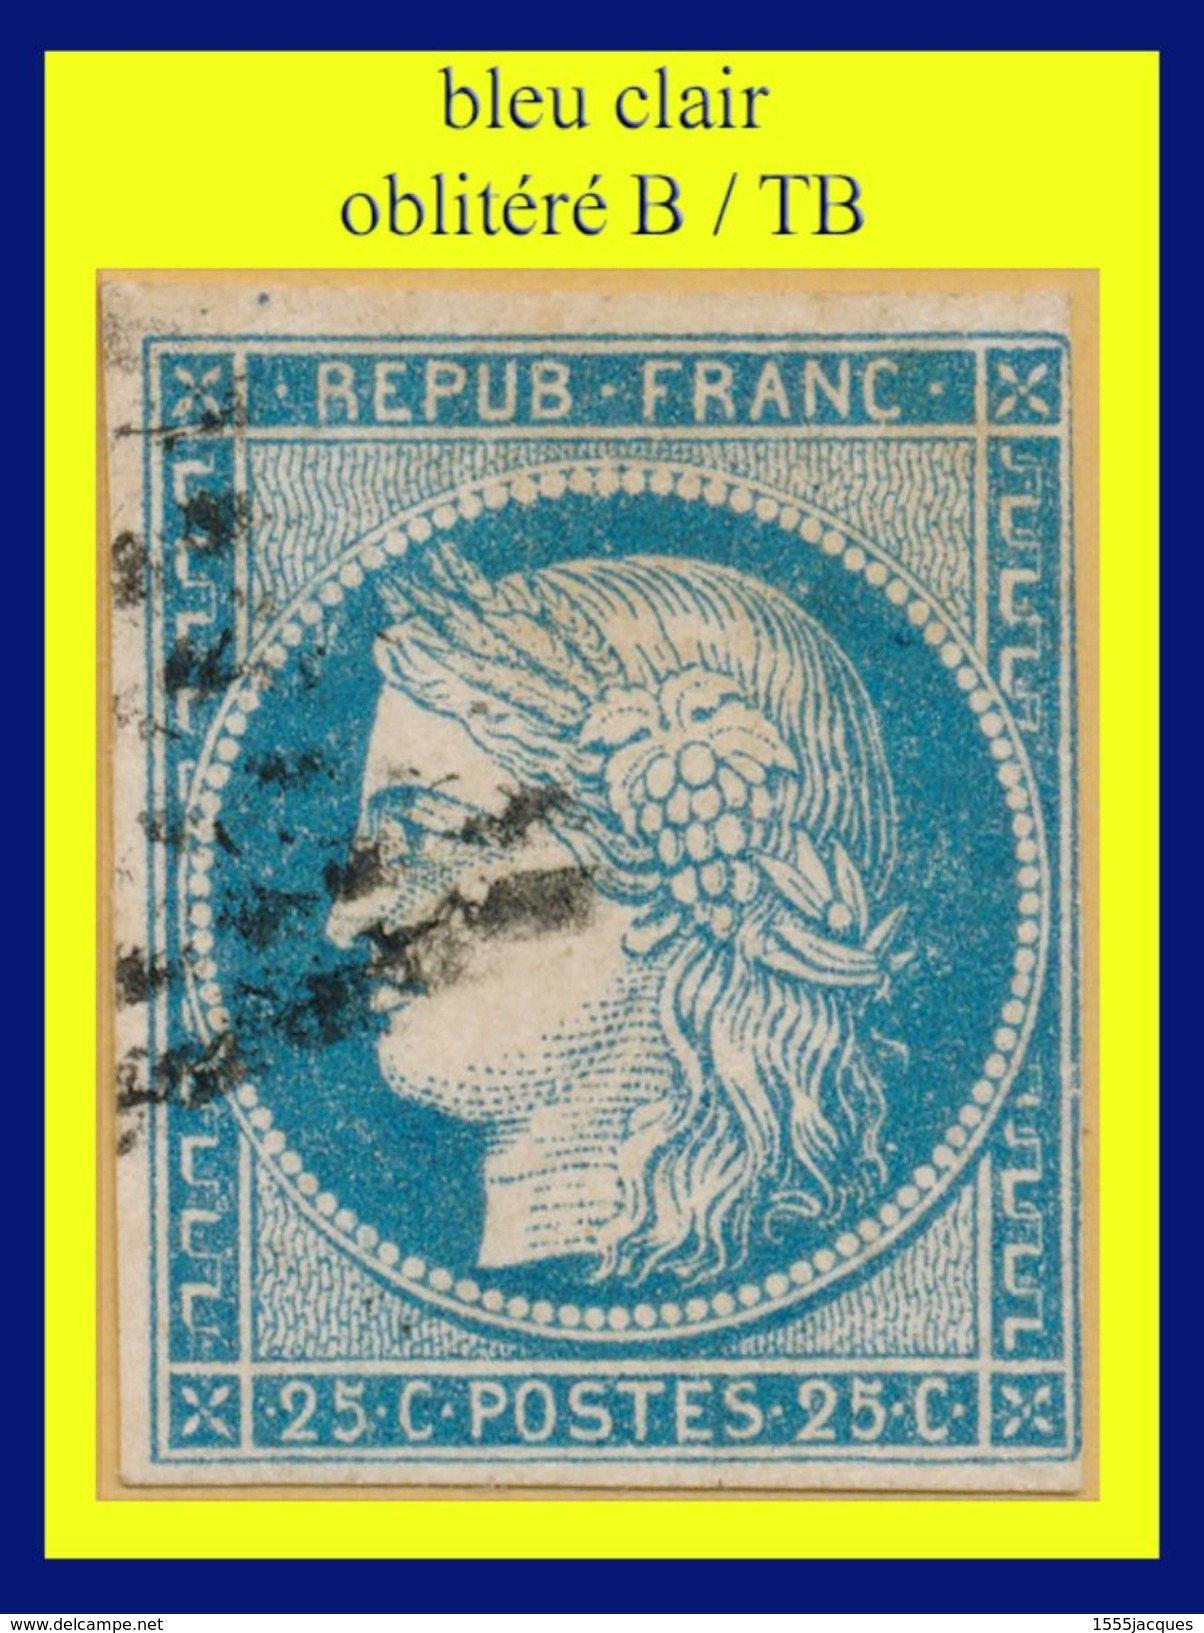 COLONIES N° 23 CÉRÈS IIIe RÉPUBLIQUE 1870 - BLEU CLAIR - OBLITÉRÉ B / TB - - Ceres